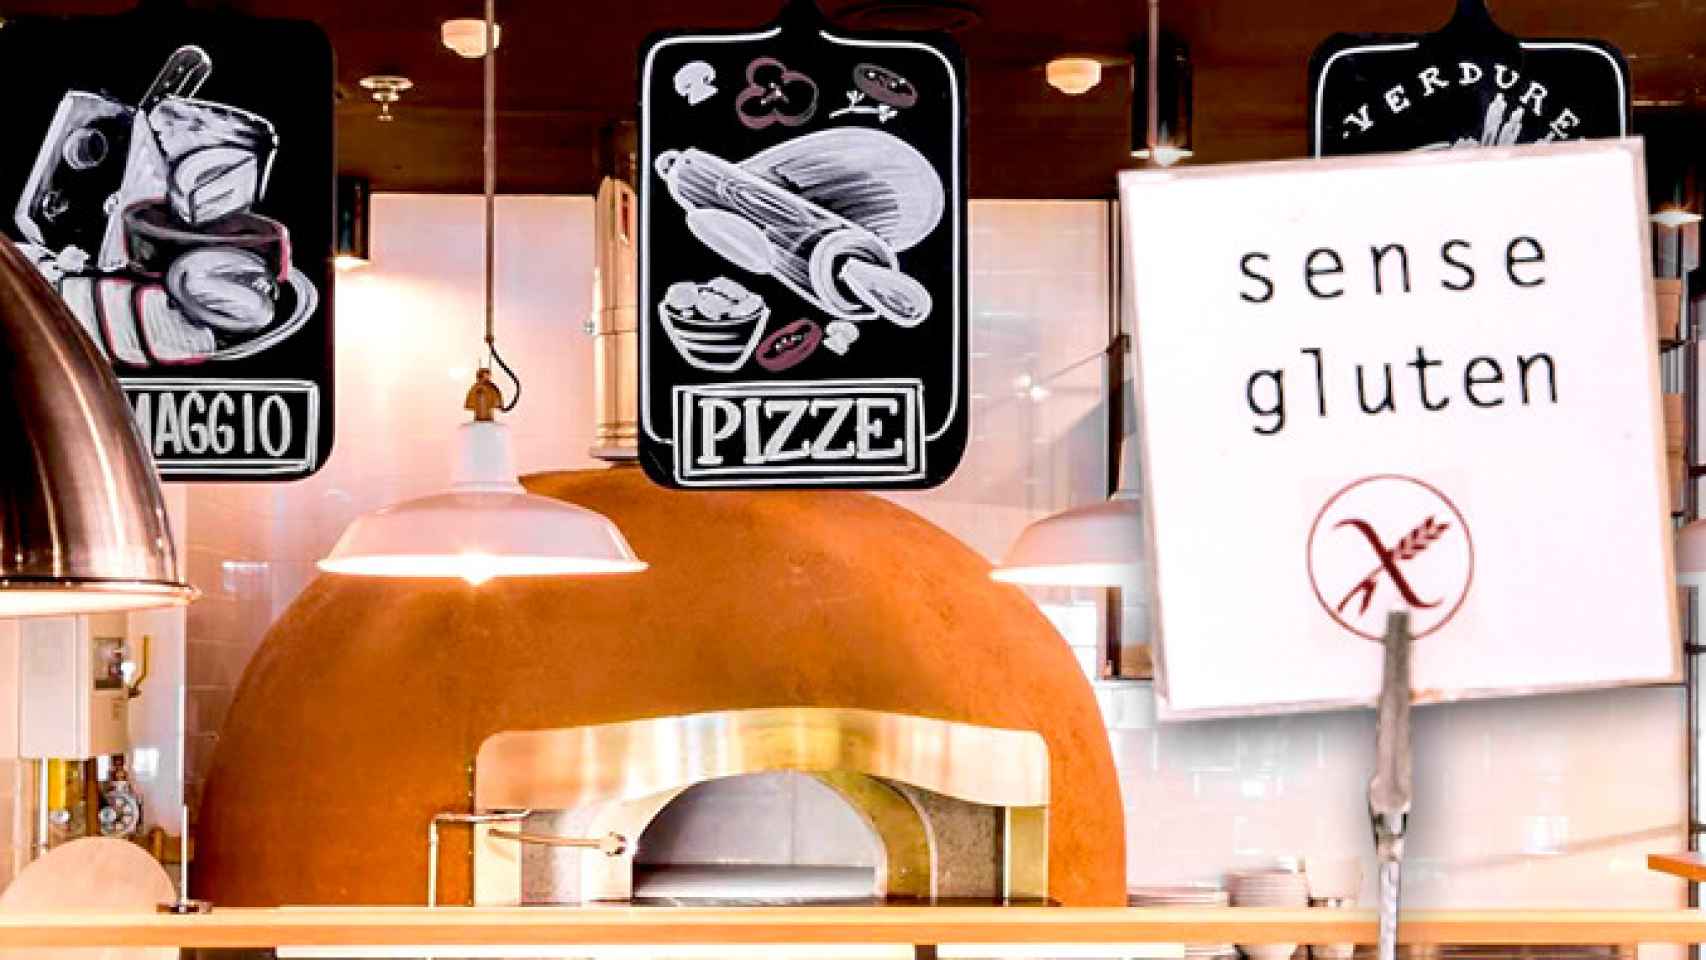 Interior de una de las pizzerías Ginos, uno de los restaurantes para celíacos en Cataluña, con un cartel 'Sense gluten' / FOTOMONTAJE DE CG